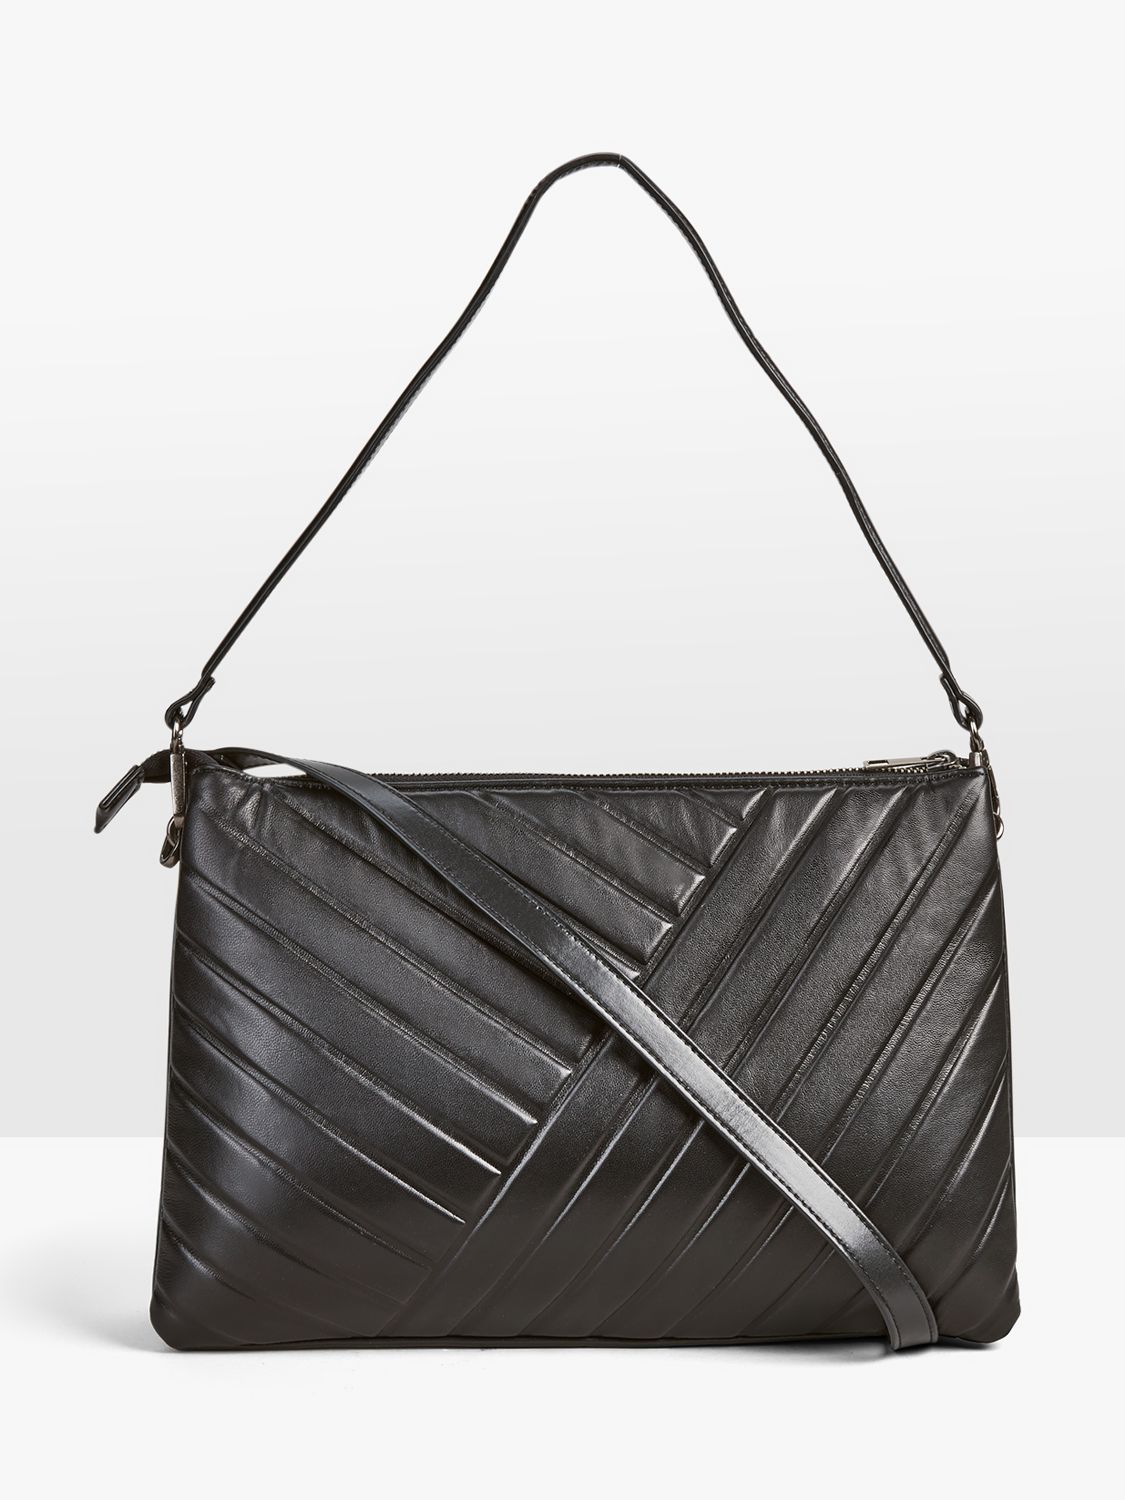 HUSH Ashfod Quilted Leather Shoulder Bag, Black, One Size